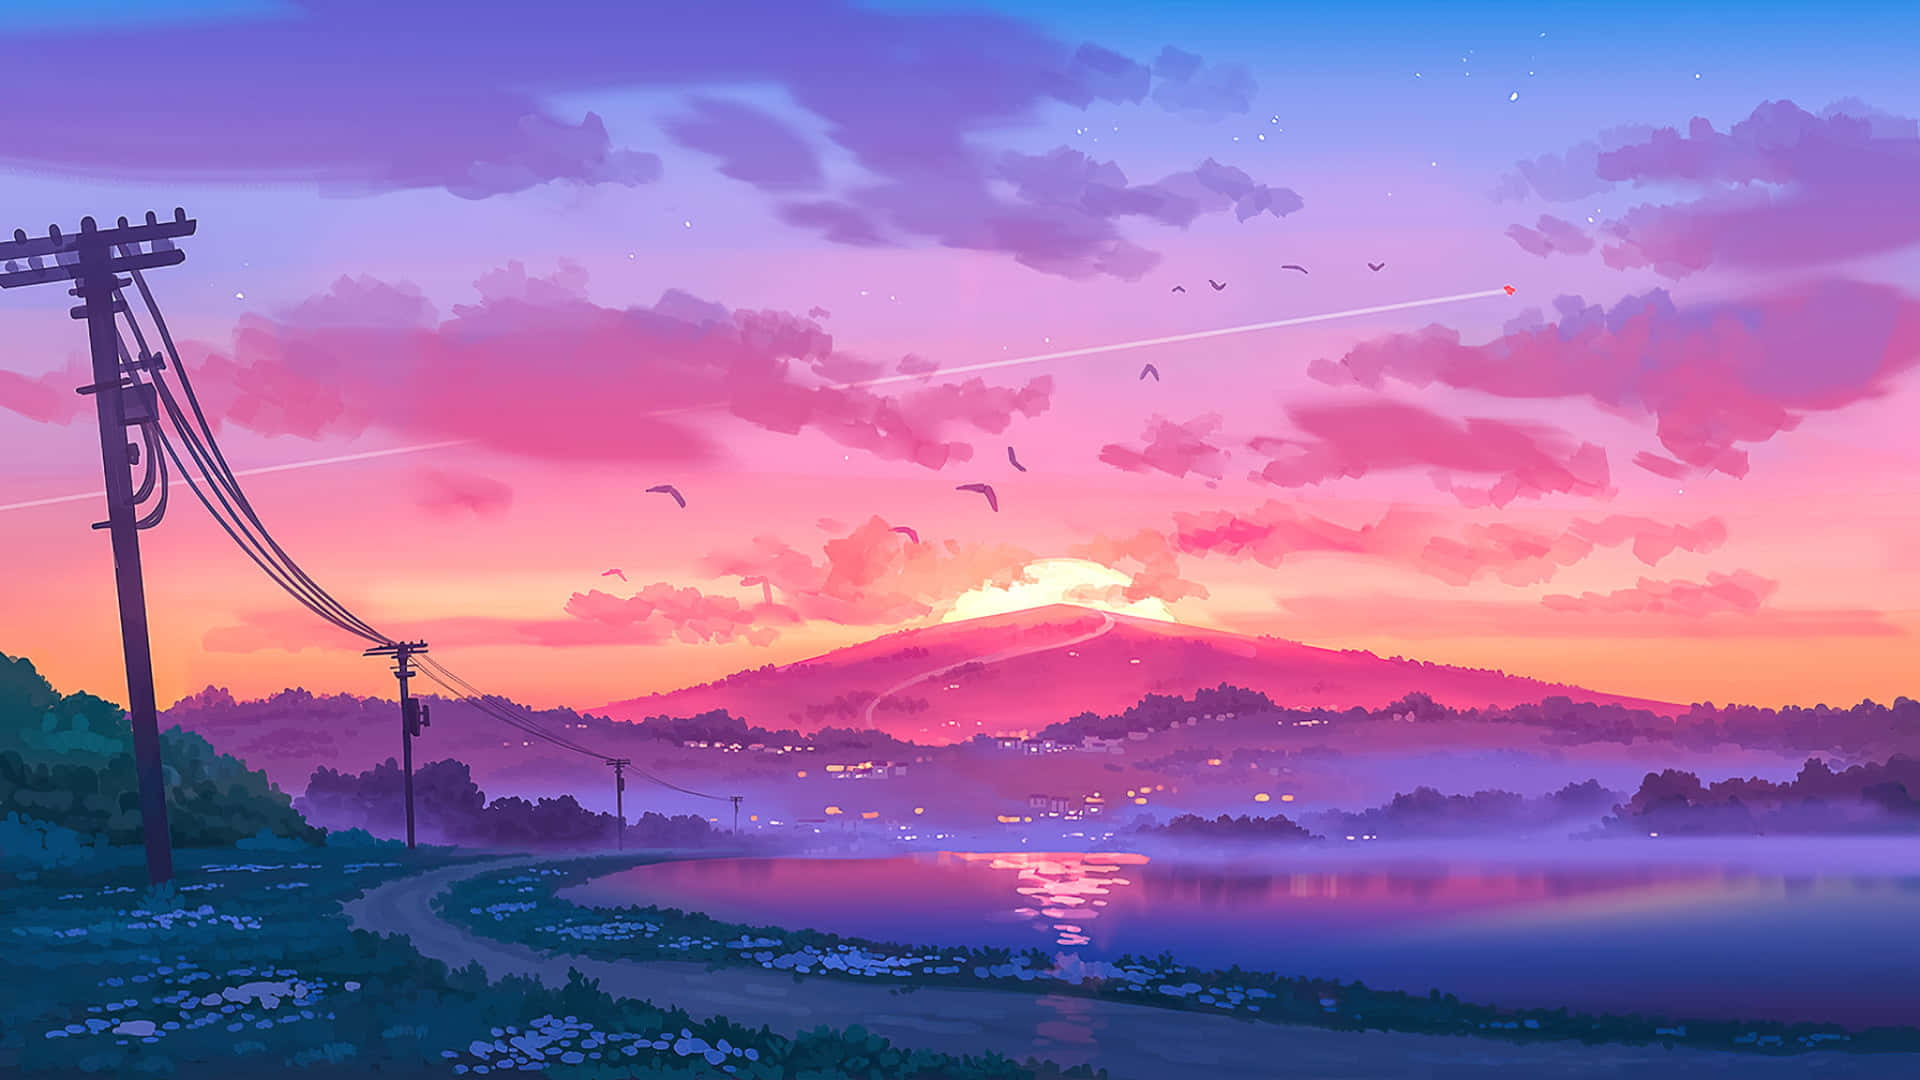 Sunset Sky 2048x1152 Pixel Wallpaper